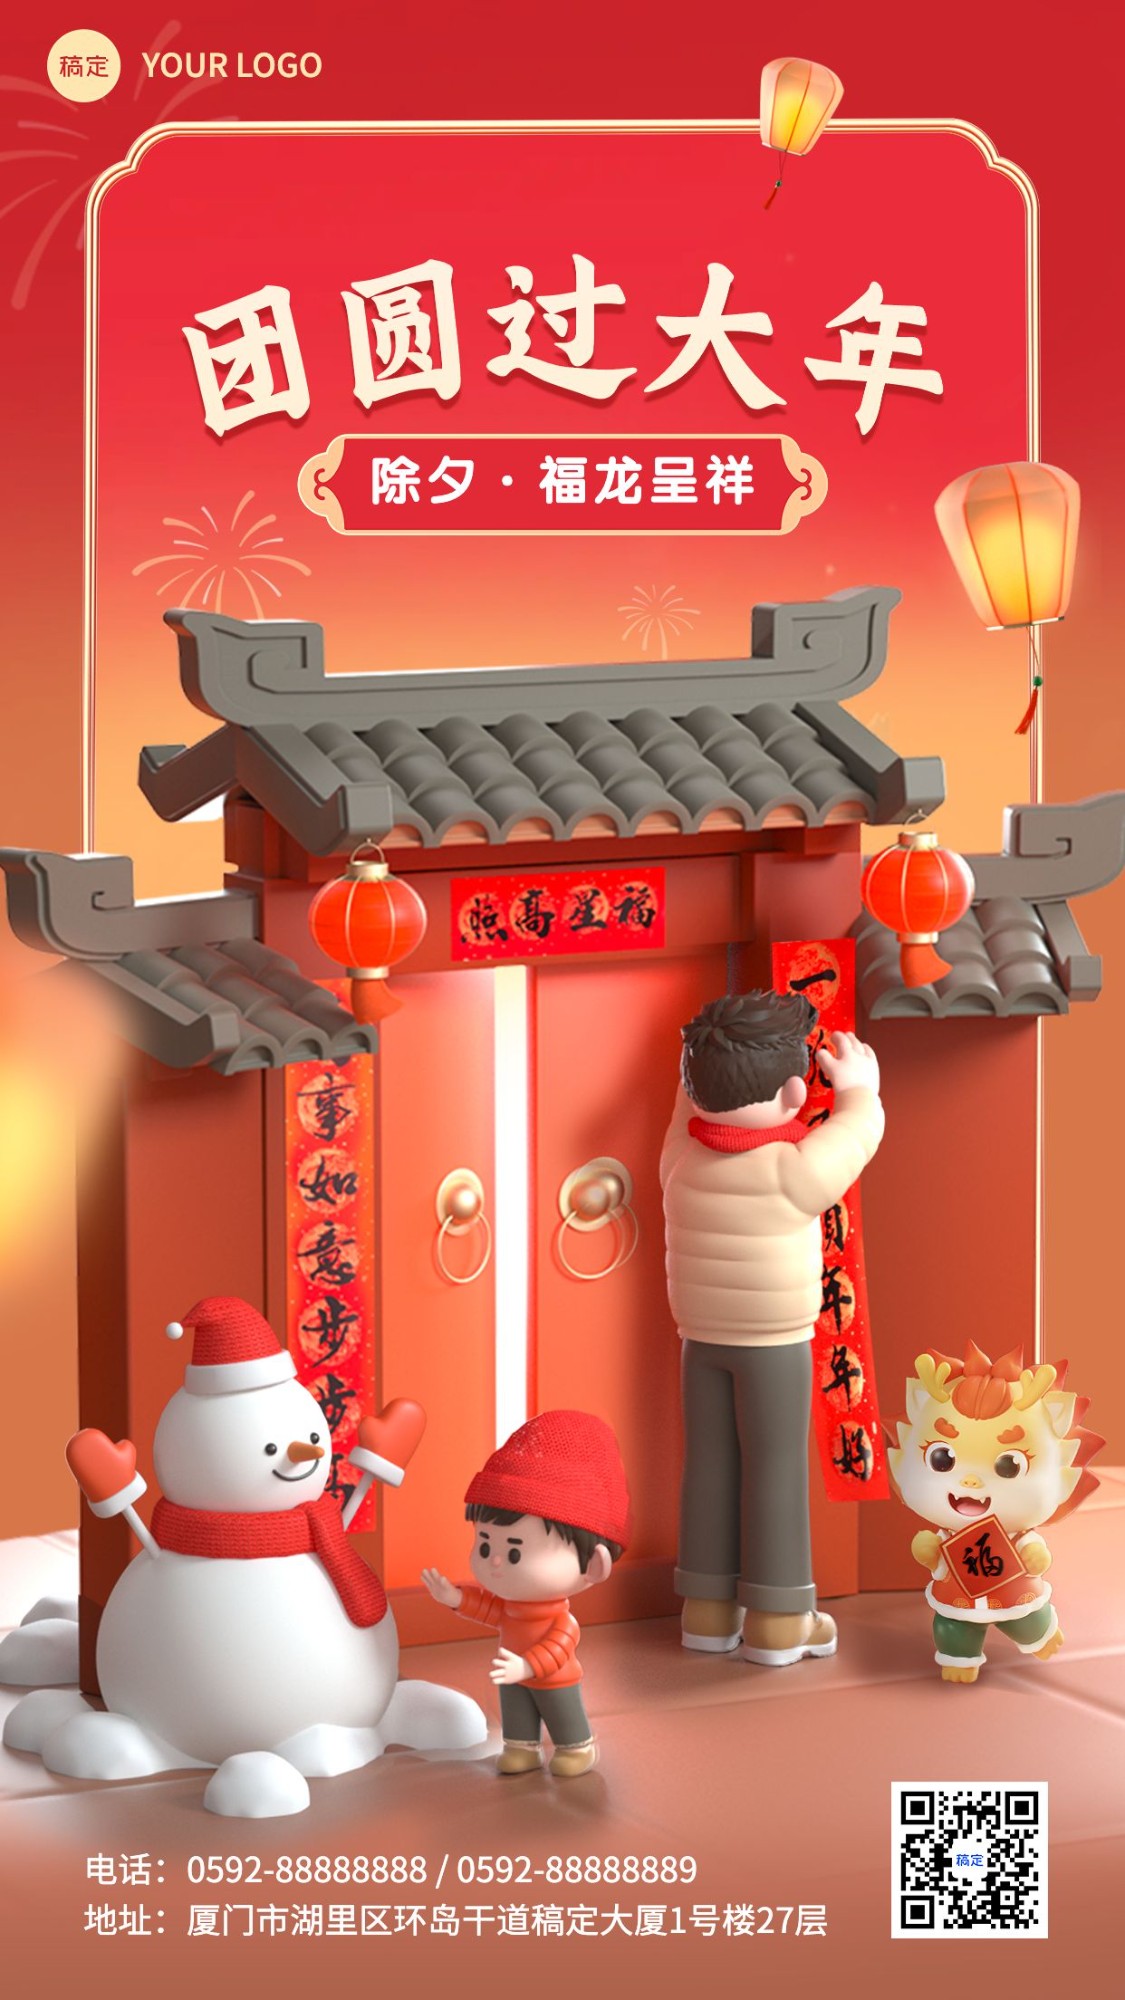 春节新年祝福3d手机海报